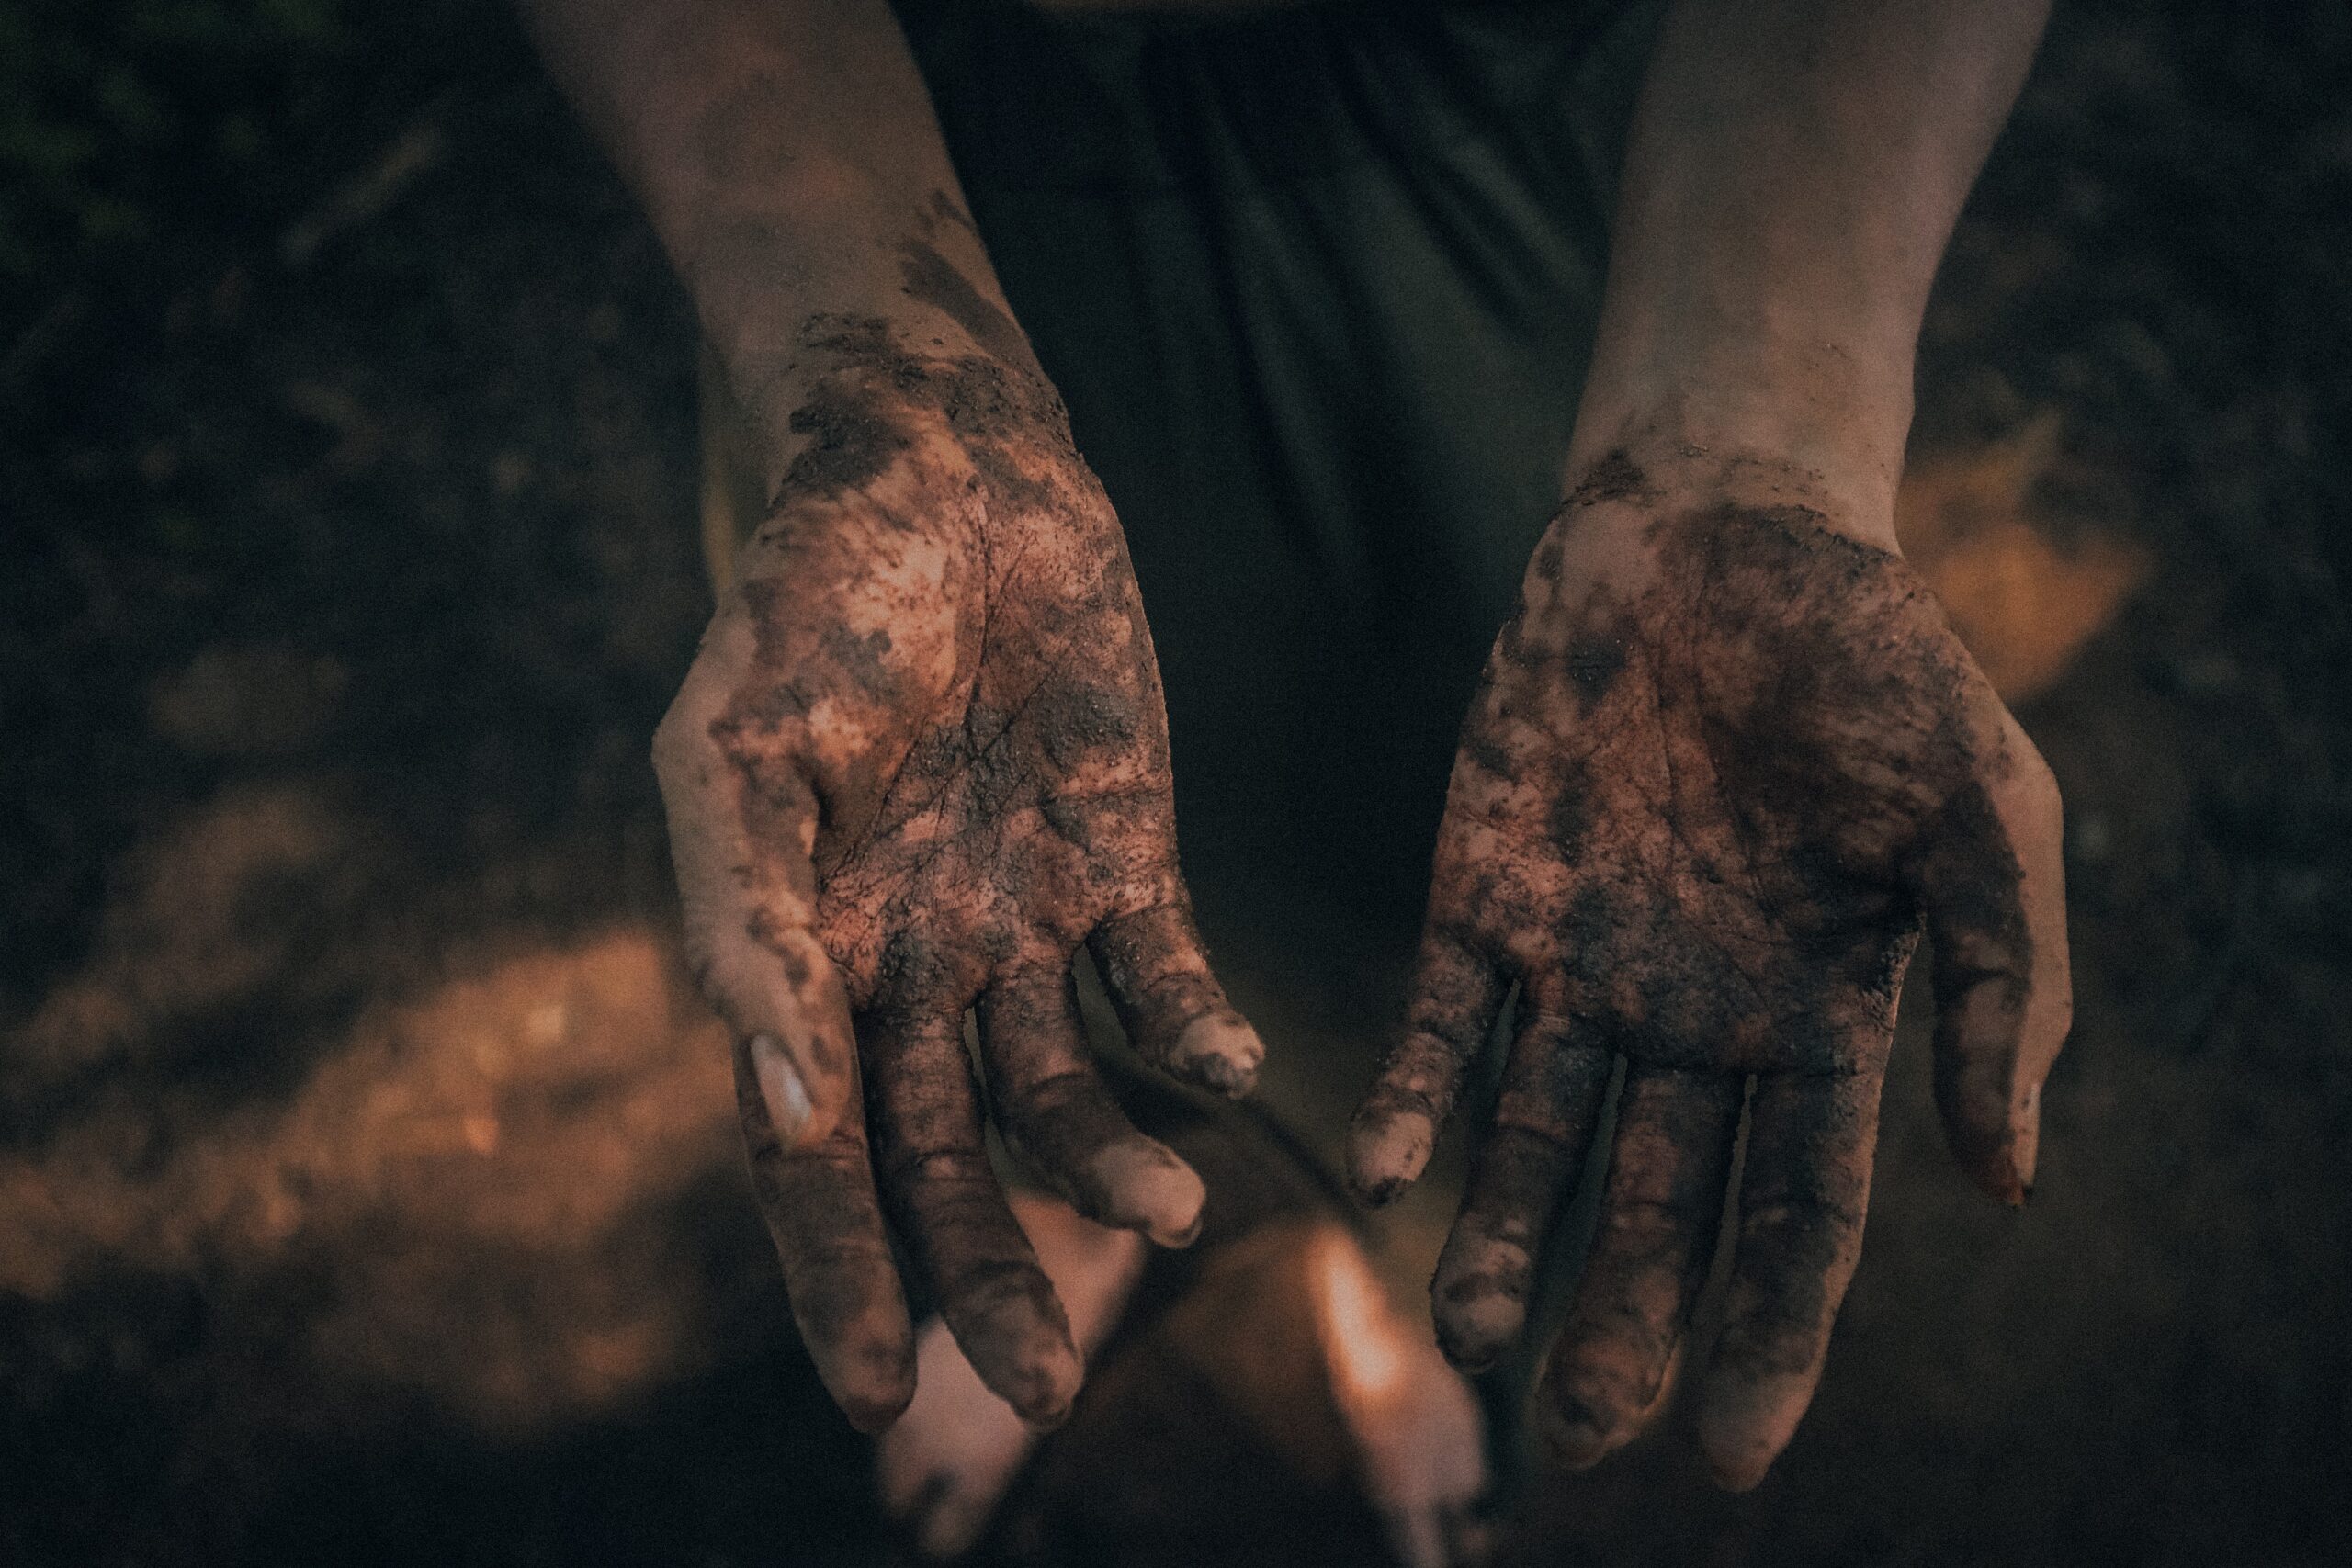 Hands in dirt (Credit Chris Yang)